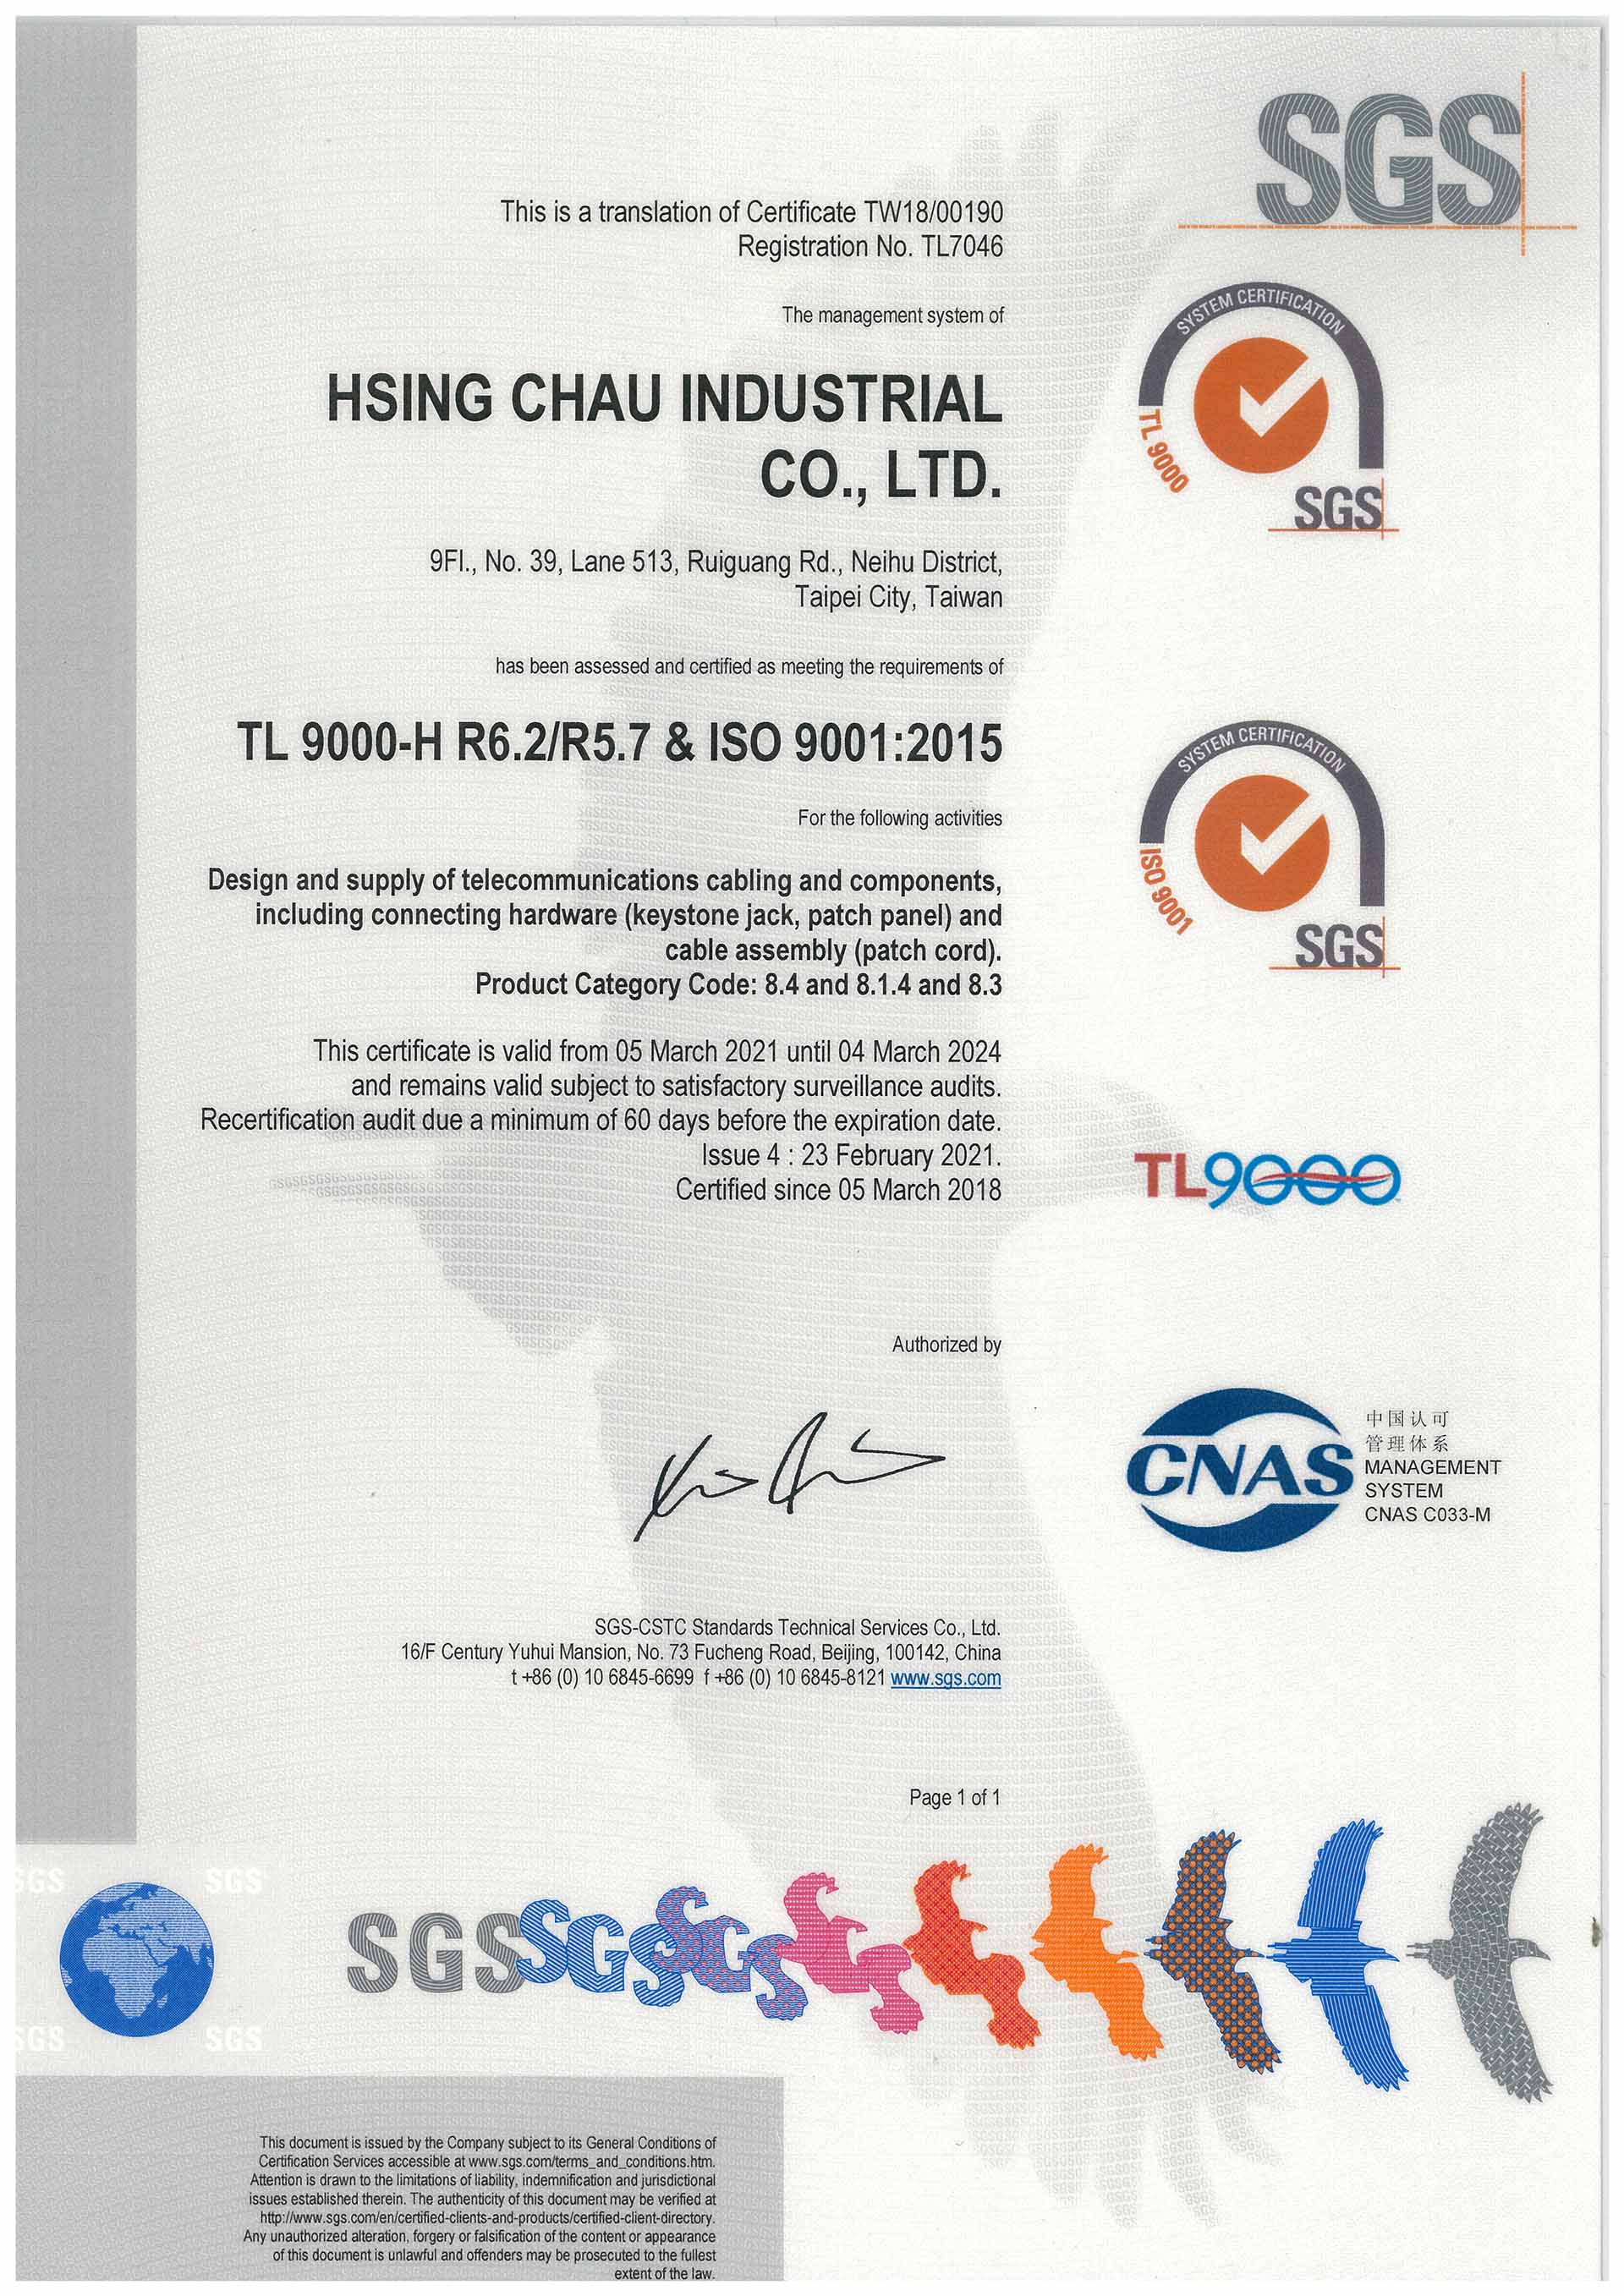 HCI logra las certificaciones de gestión de calidad TL 9000 e ISO 9001:2015